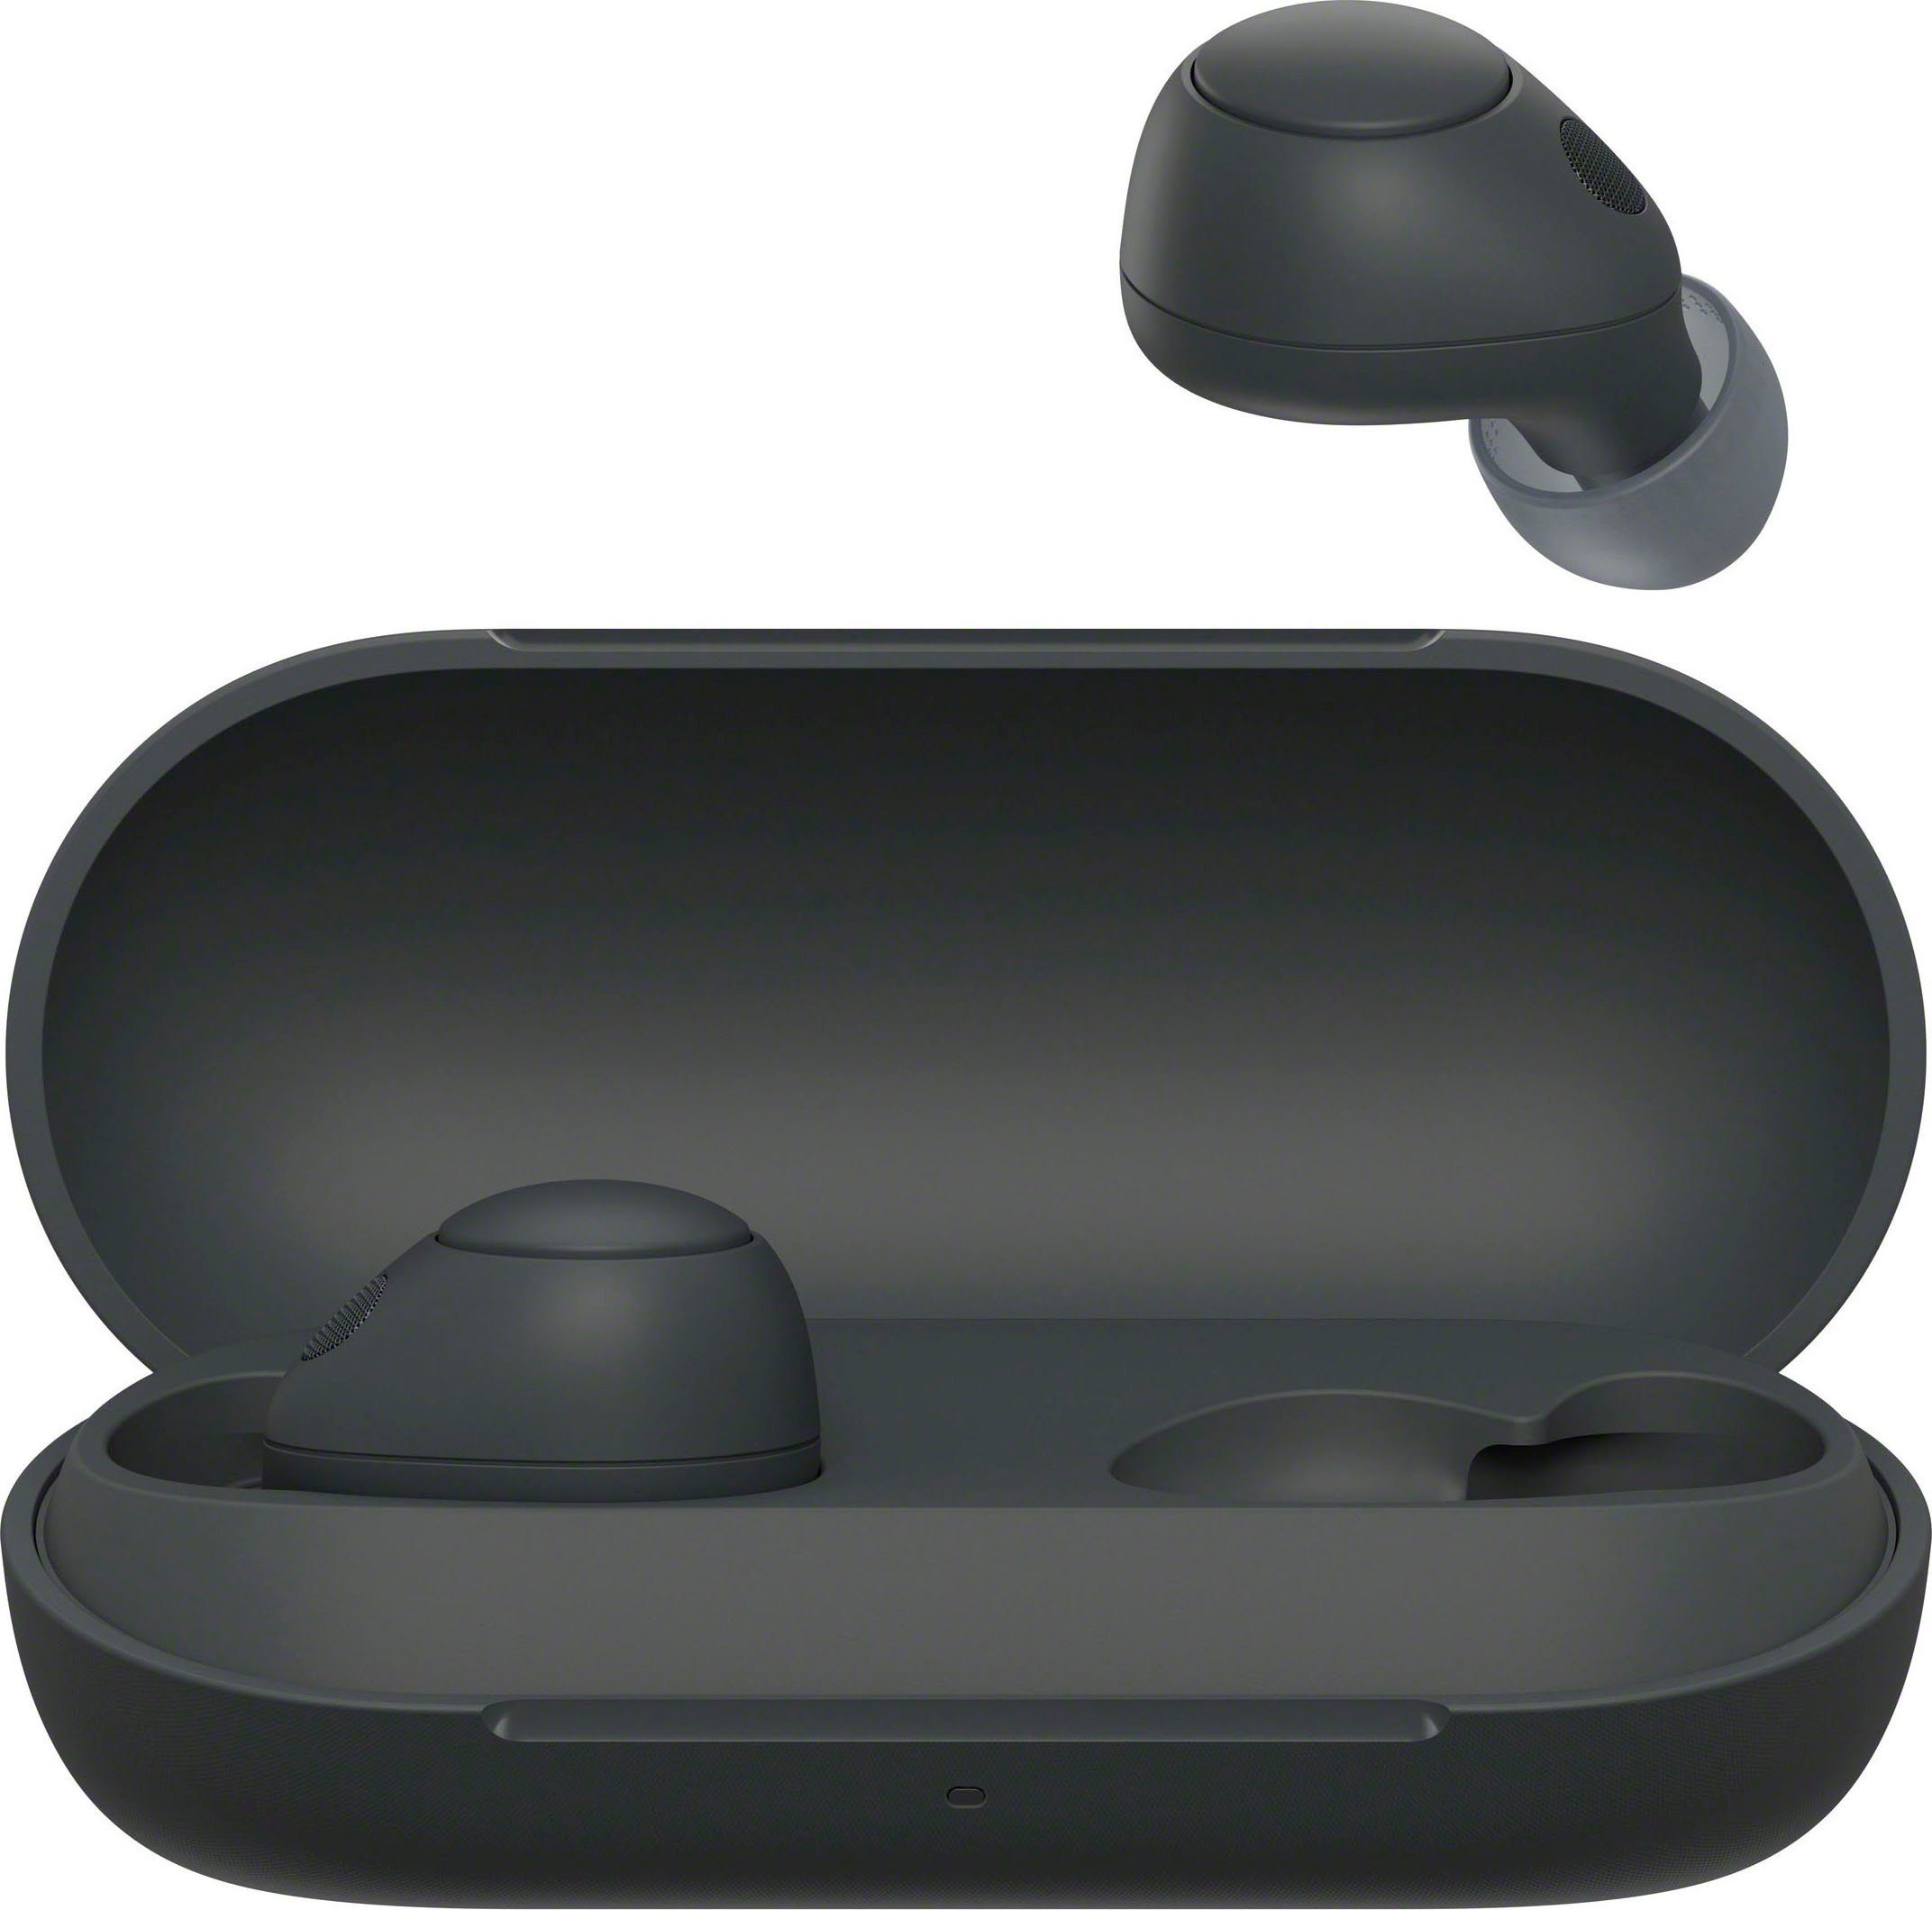 Akkulaufzeit, WF-C700N 20 Std. In-Ear-Kopfhörer (Noise-Cancelling, Gojischwarz Bluetooth, Connection) bis Multipoint Sony